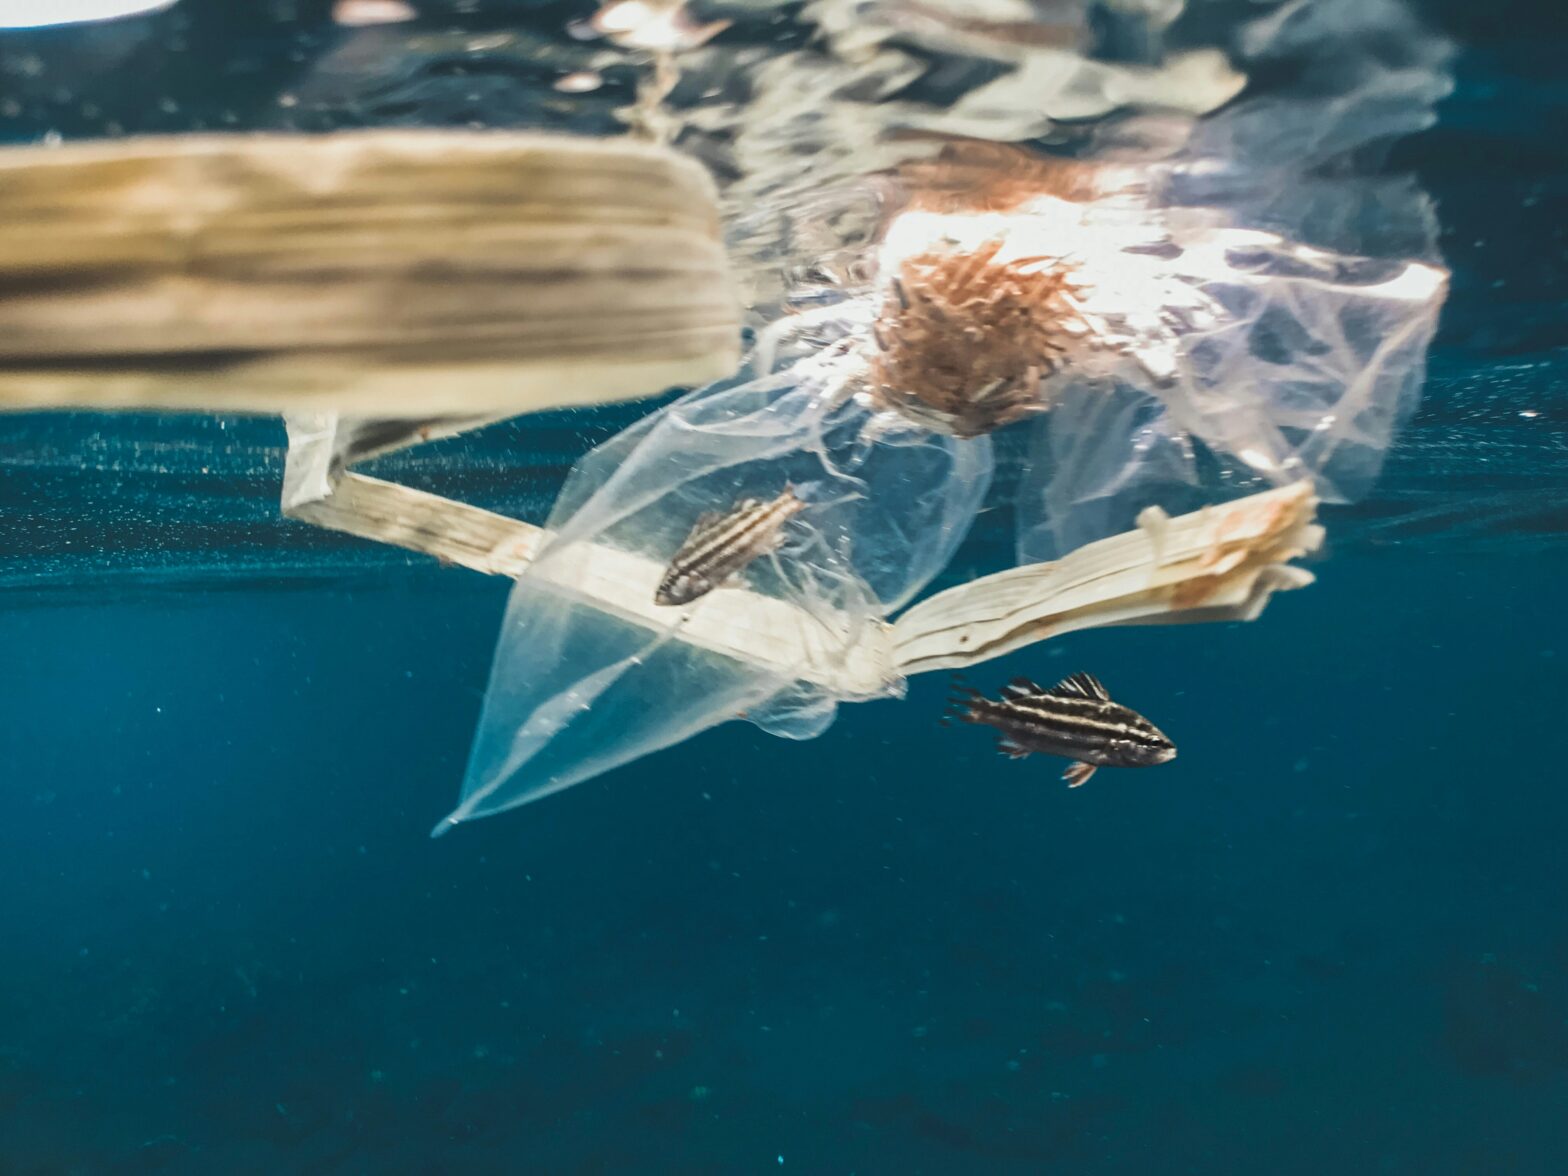 Plastikmüll kann zur gefährlichen Falle für Meeresbewohner werden. © Unsplash / Naja Bertolt Jensen